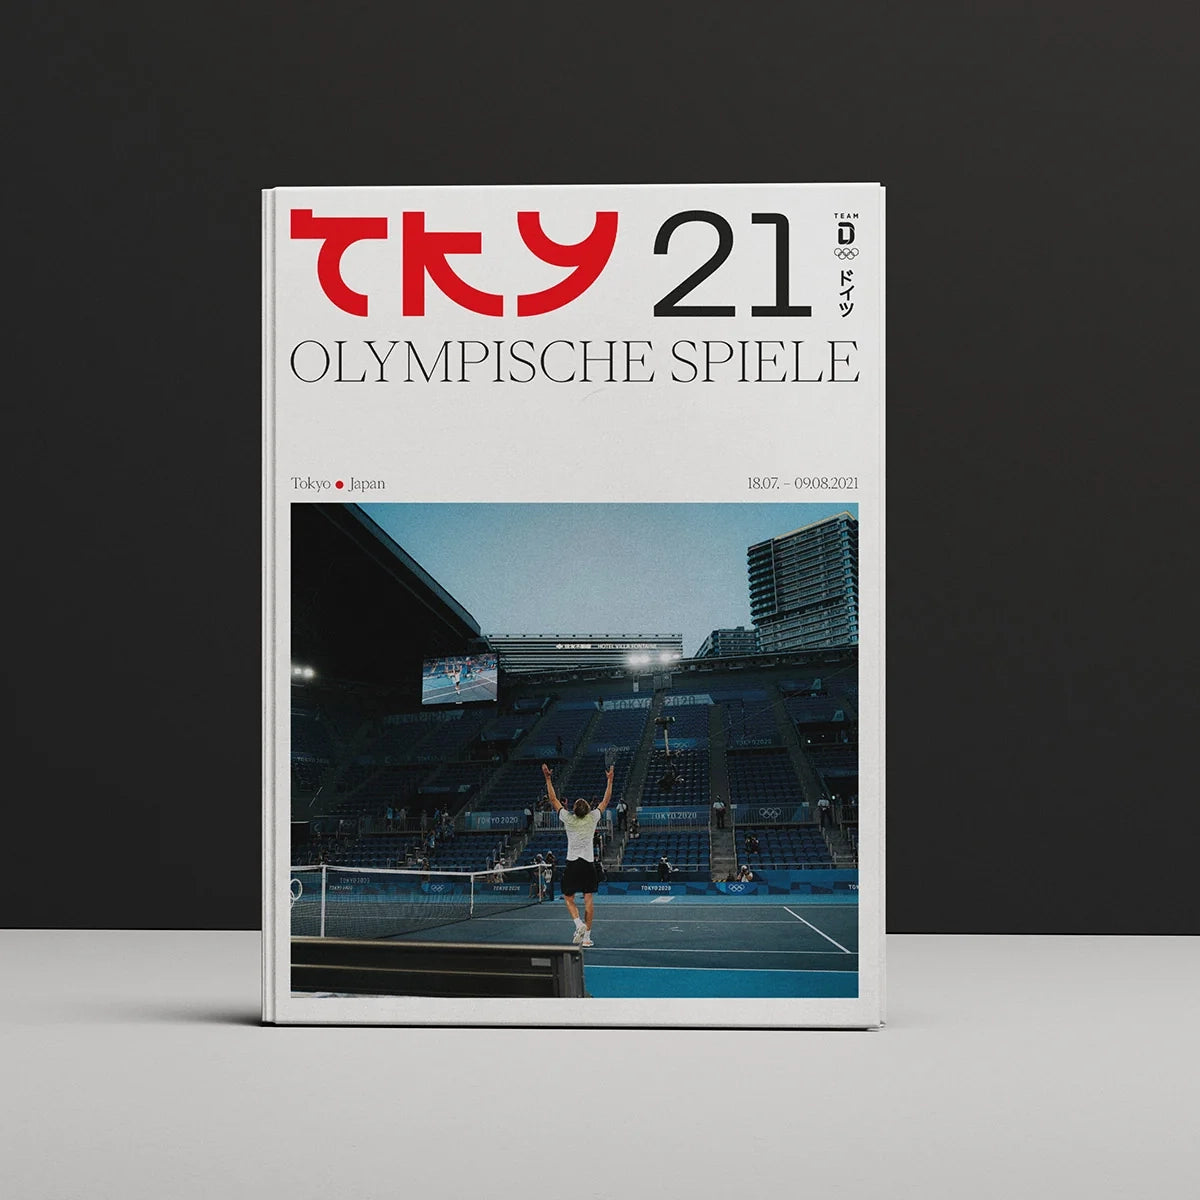 TKY 21 Olympische Spiele